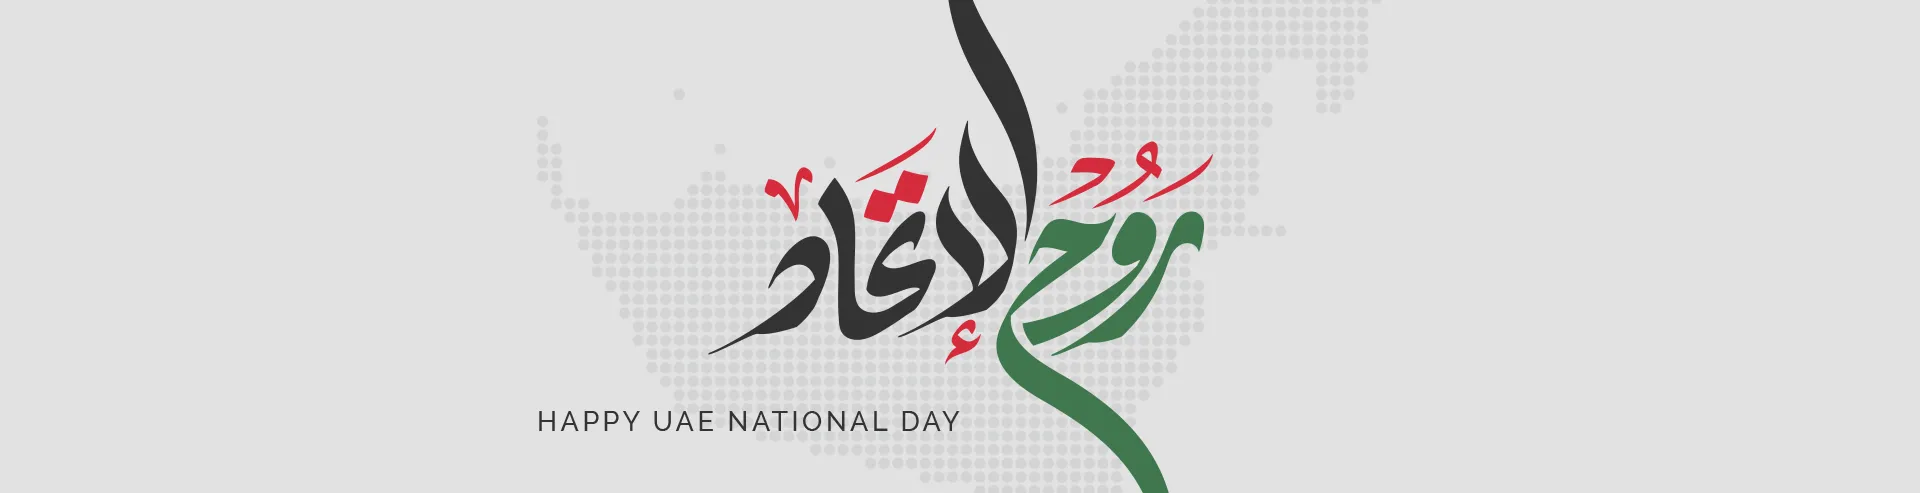 VM-Hero-UAE-National-Day-LP-1920x493.webp